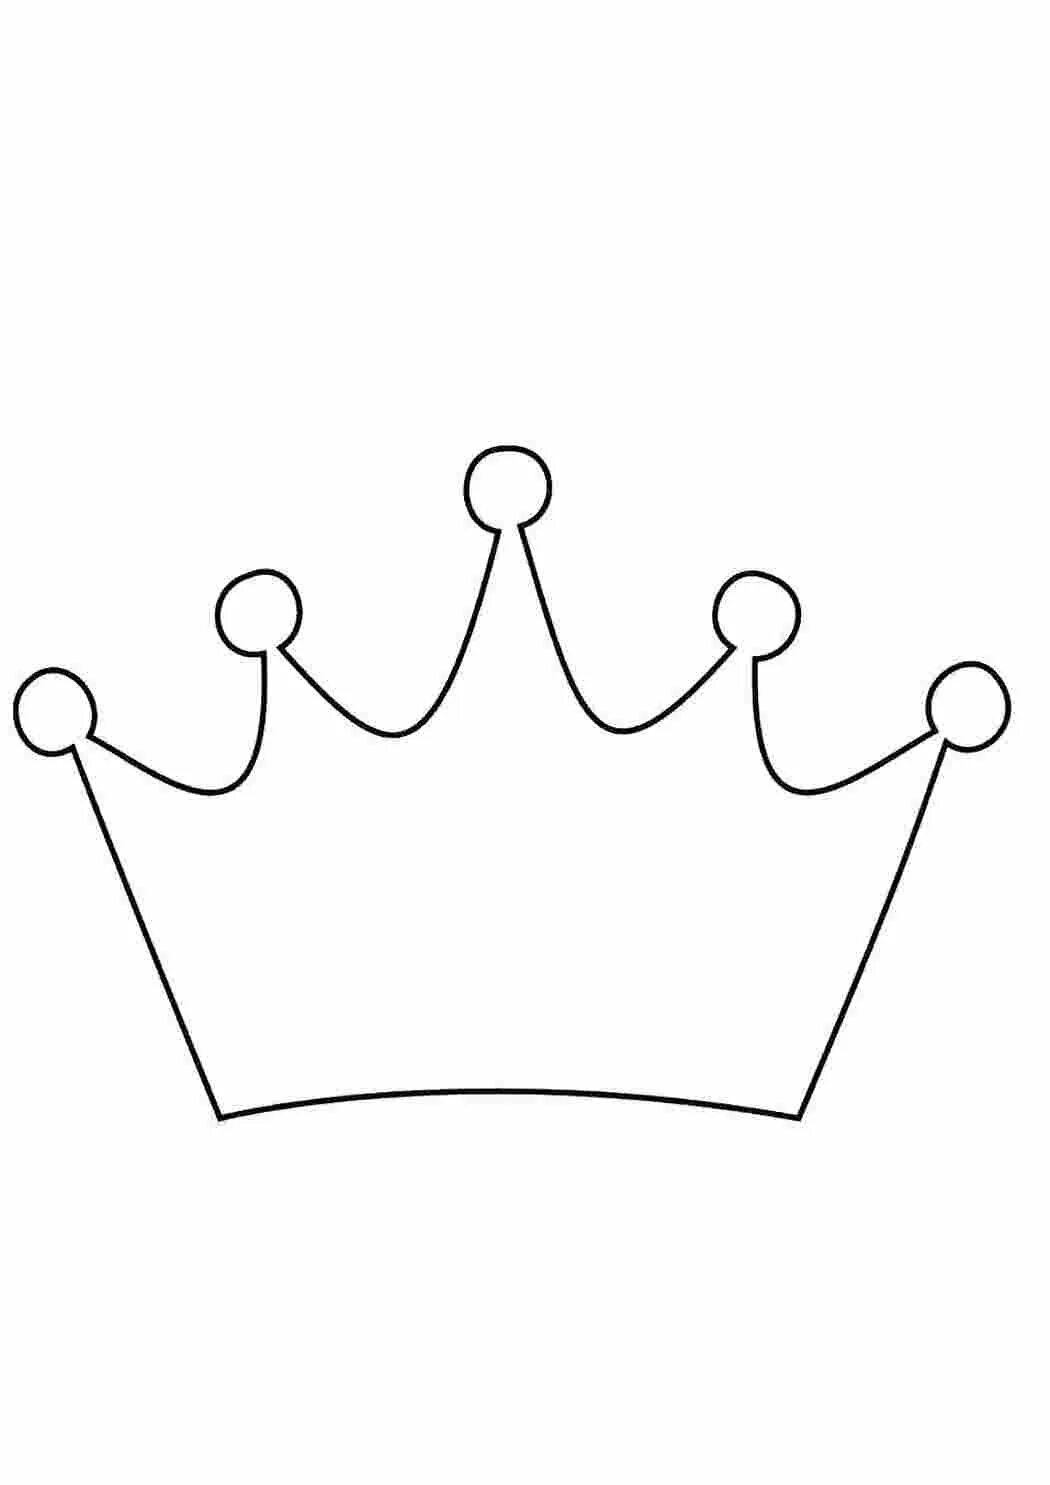 Корона шаблоны для вырезания распечатать. Корона принцесса. Шаблон. Макет короны в полный рост. Макет короны 7 лучей.